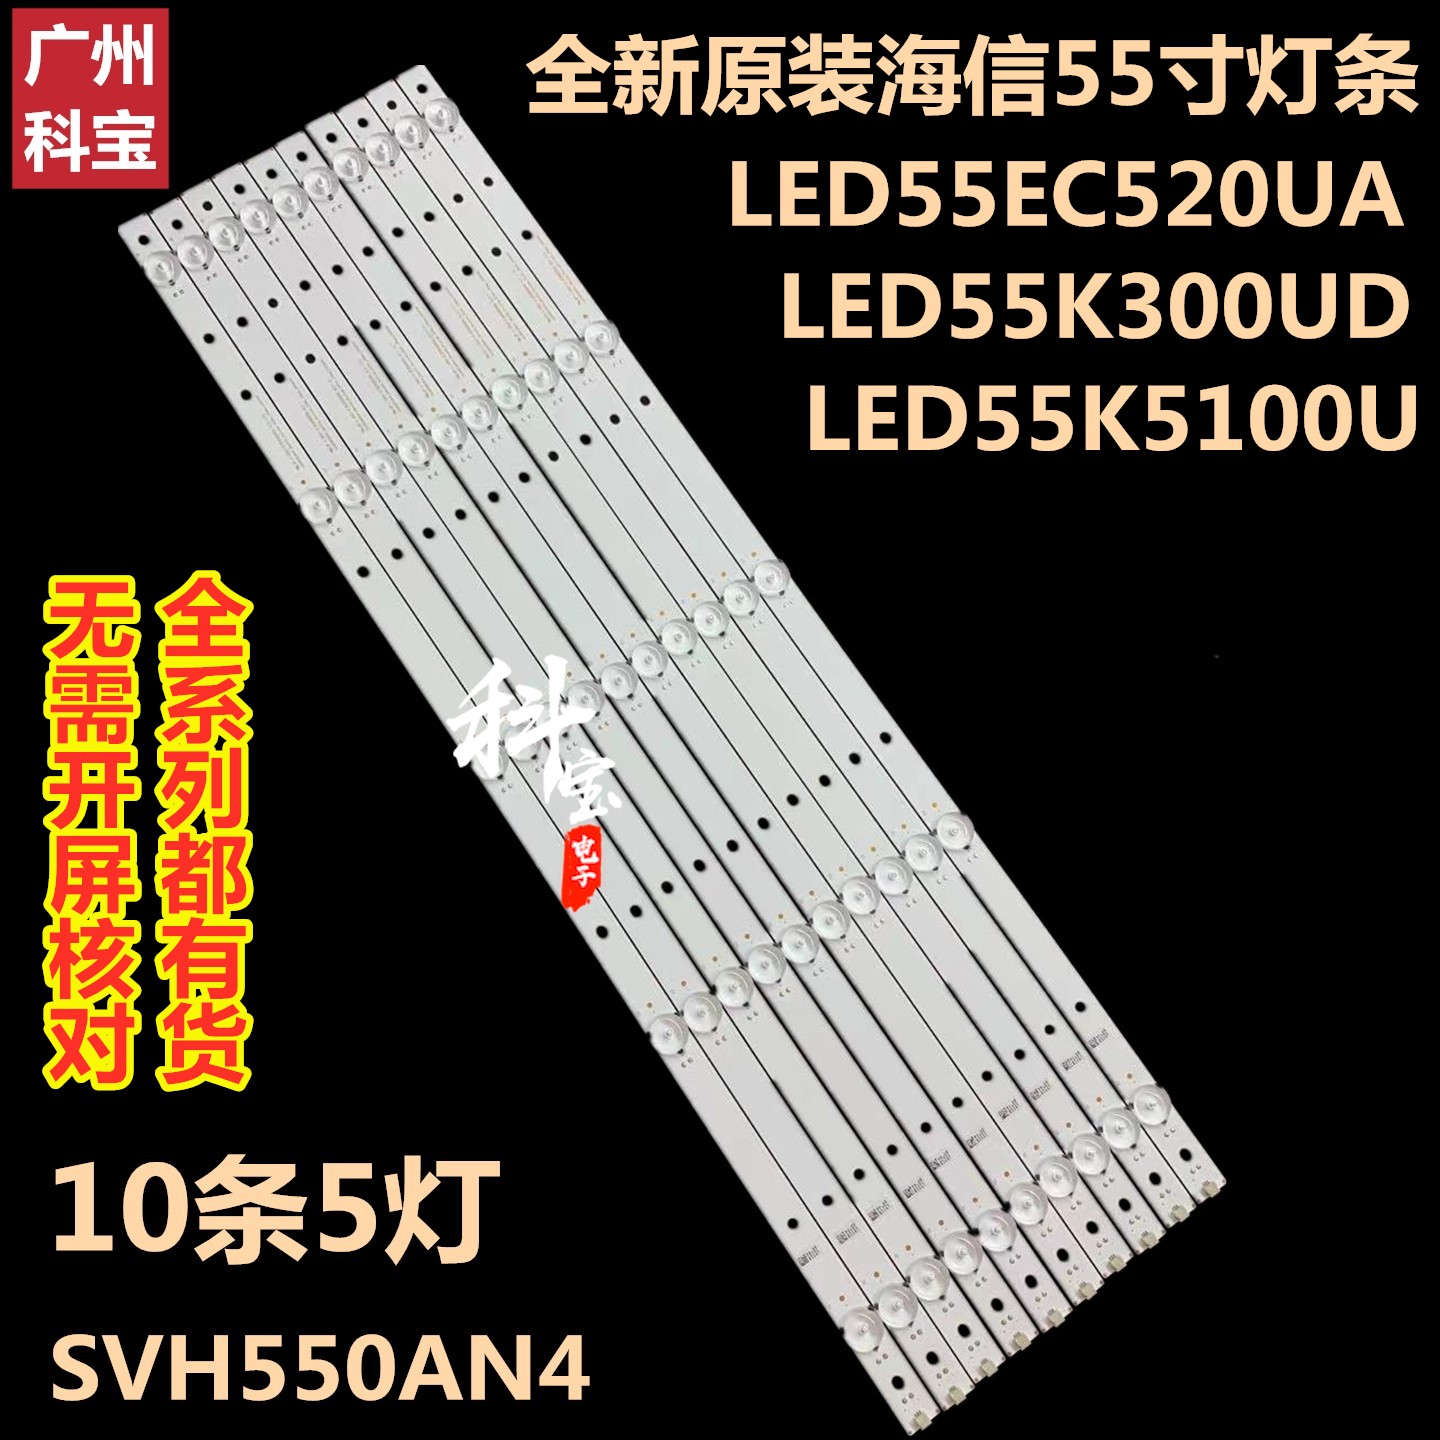 全新海信LED55K300UD LED55K5100U背光LED55EC520UA灯条SVH550AN4 电子元器件市场 显示屏/LCD液晶屏/LED屏/TFT屏 原图主图